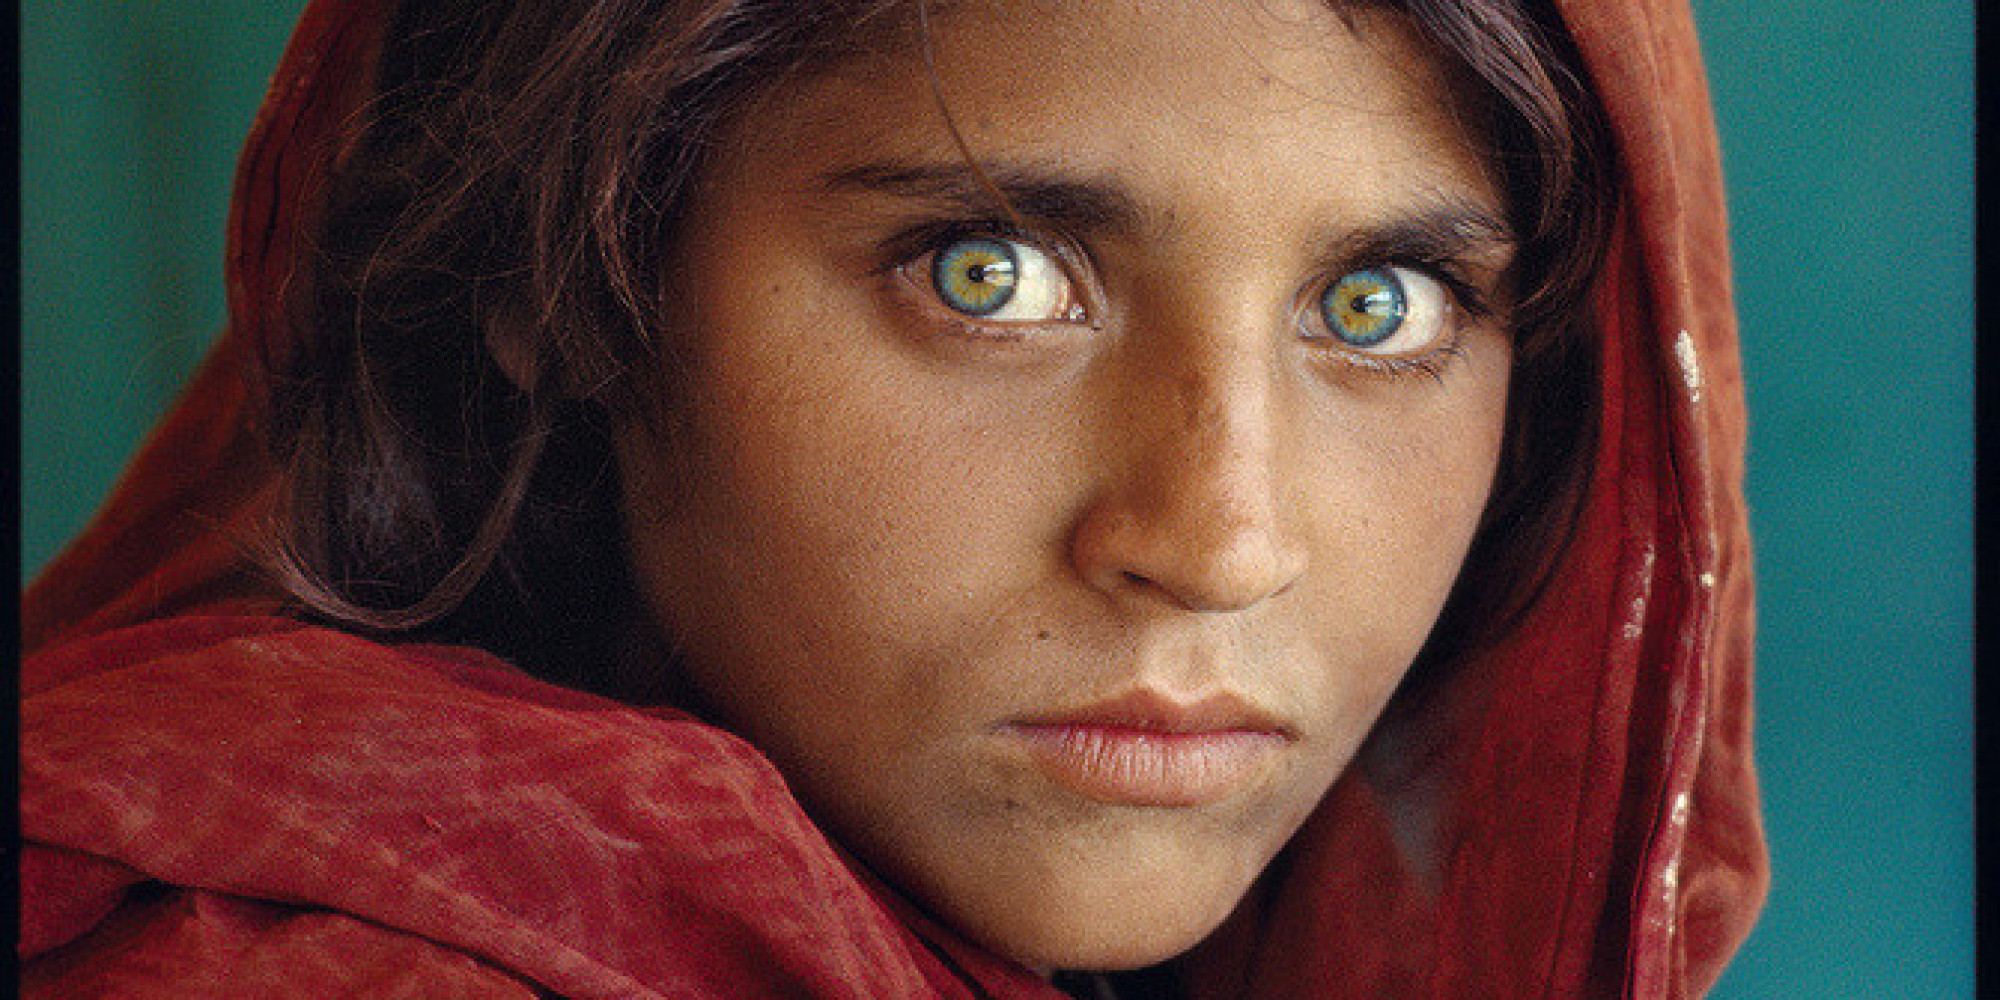 Le donne afghane non hanno più lacrime